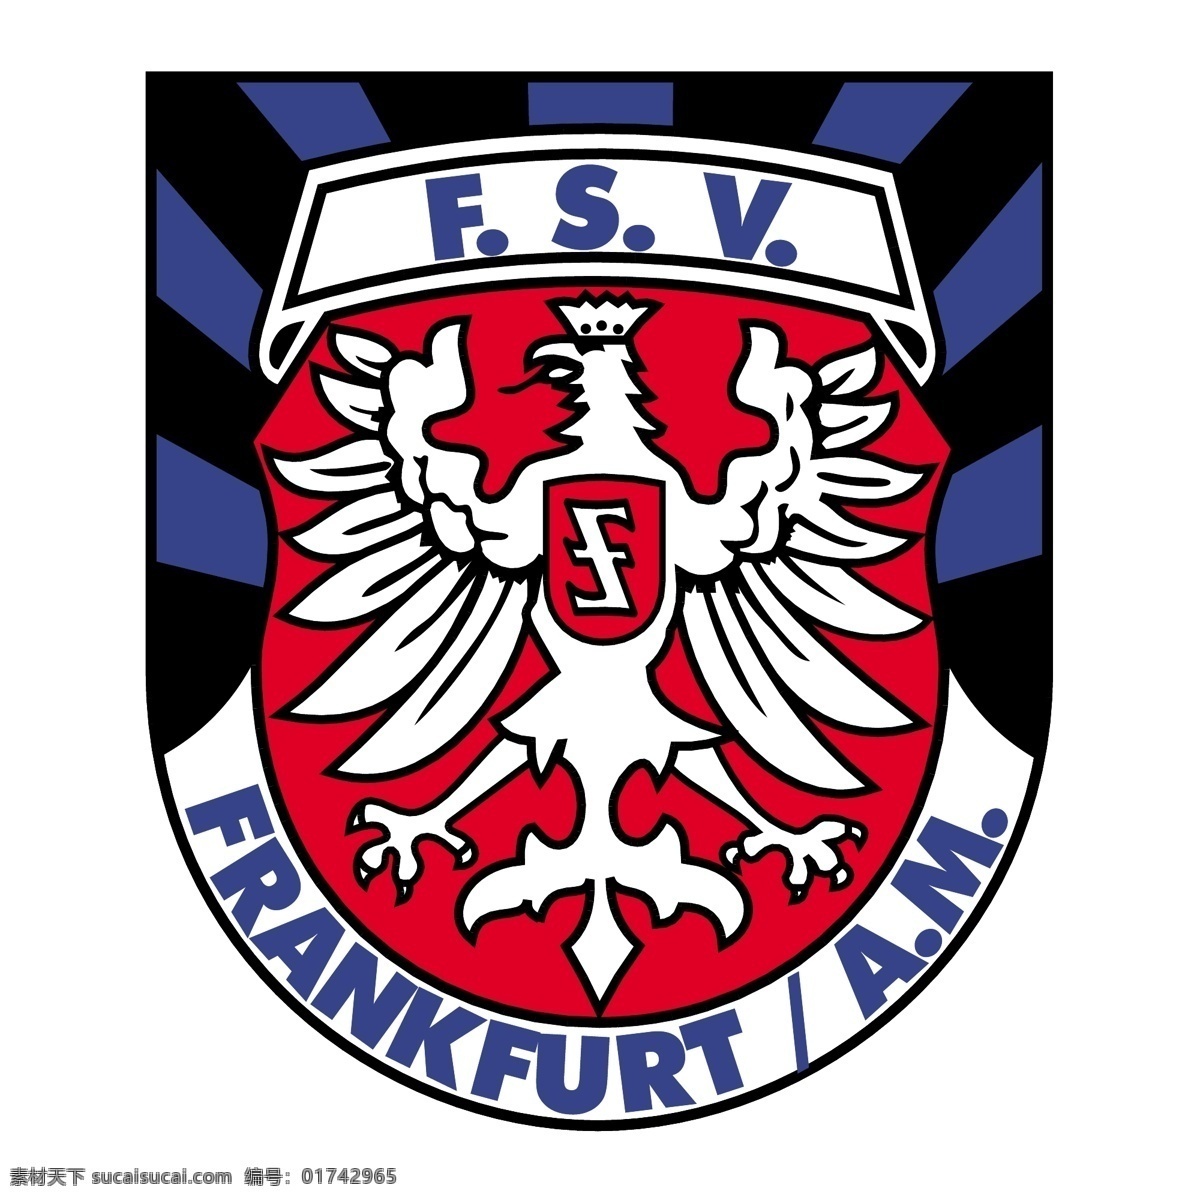 法兰克福 足球 俱乐部 免费 fsv 标识 psd源文件 logo设计